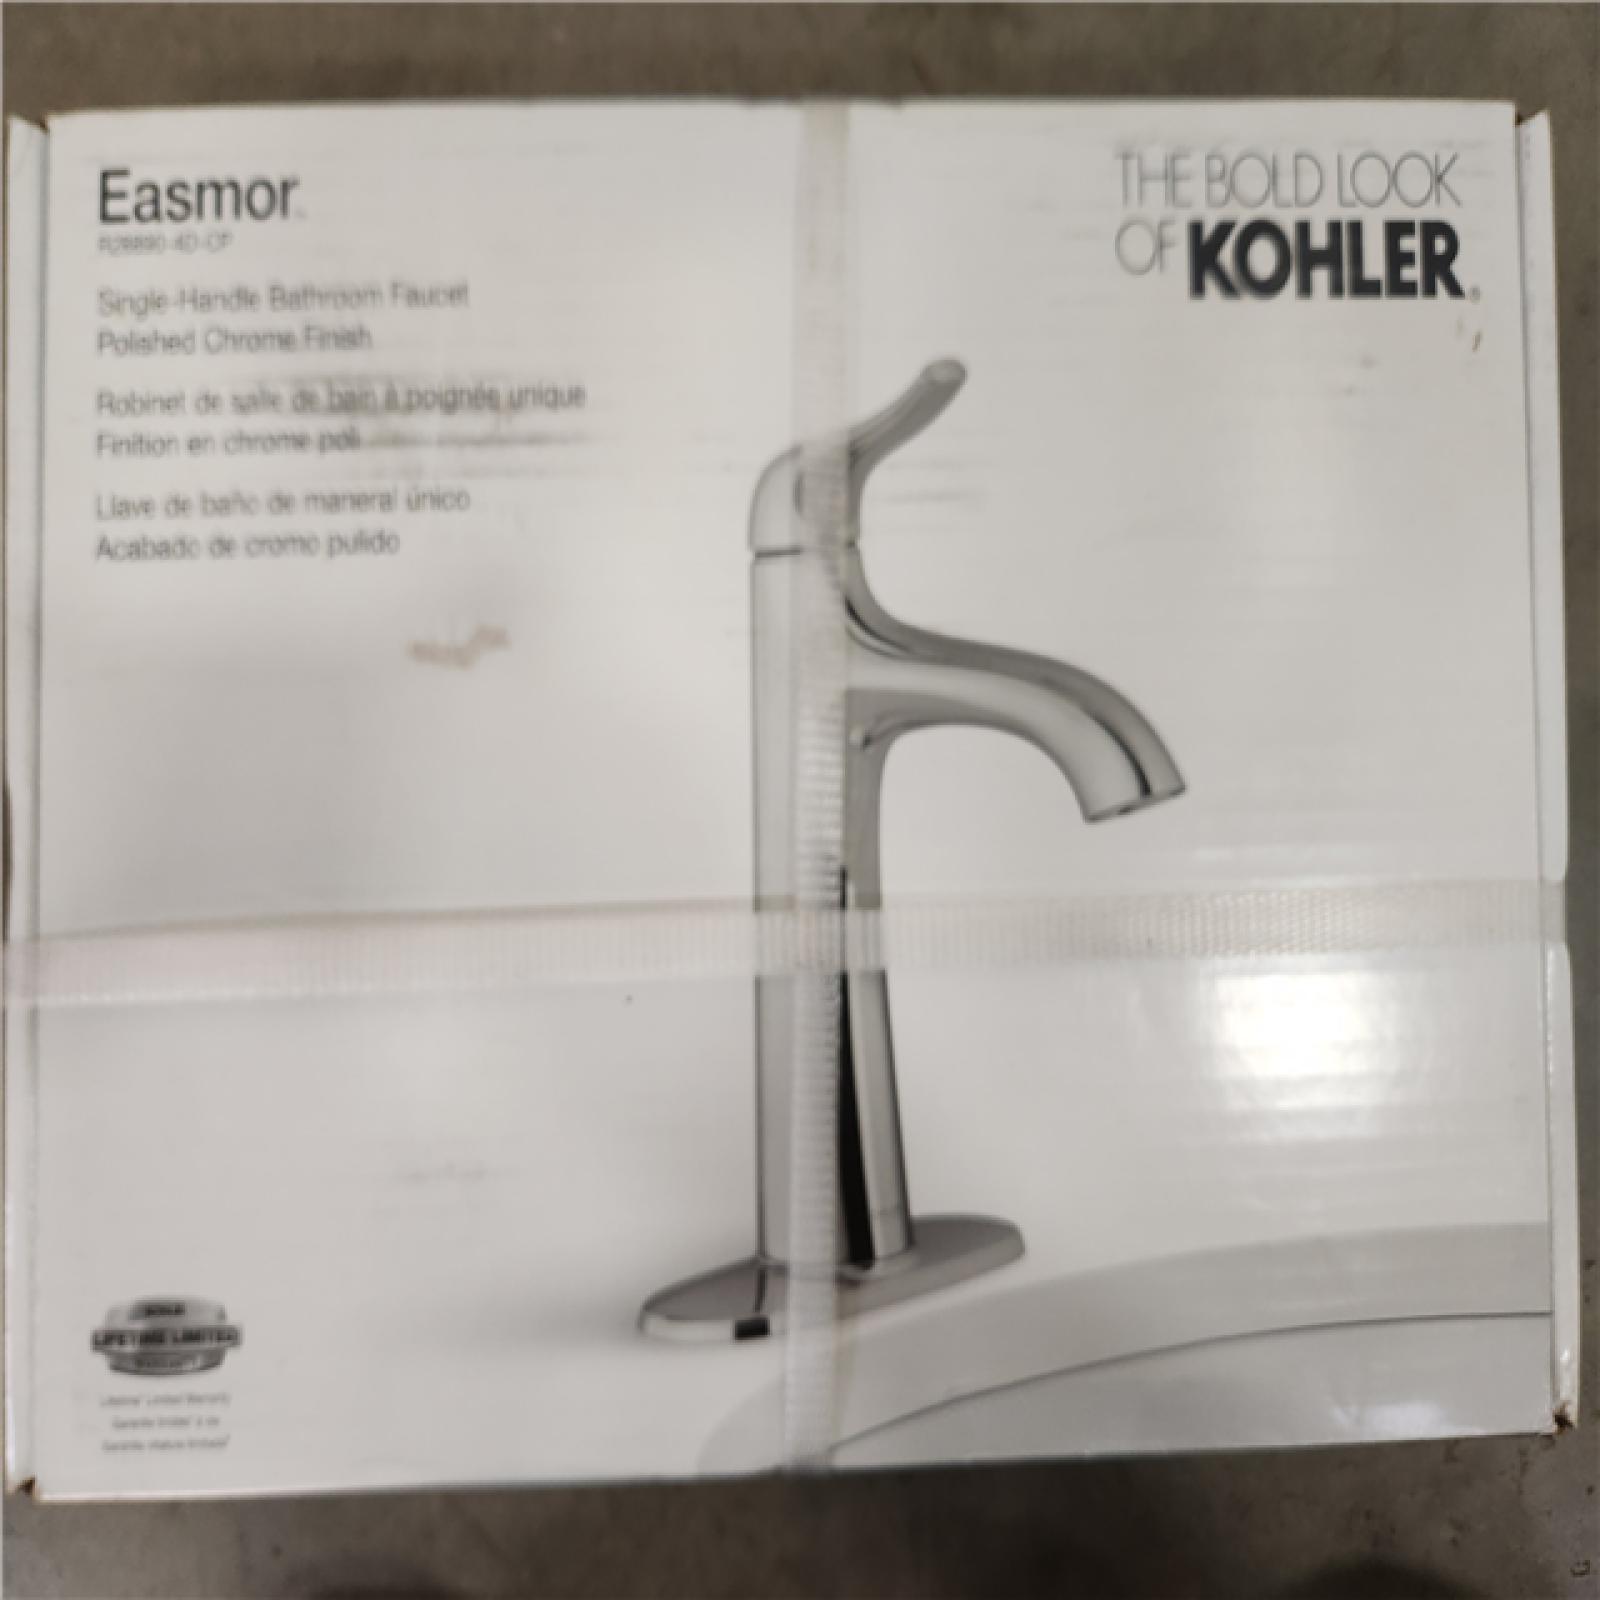 Phoenix Location NEW Kohler Easmor Chrome Finish Faucet